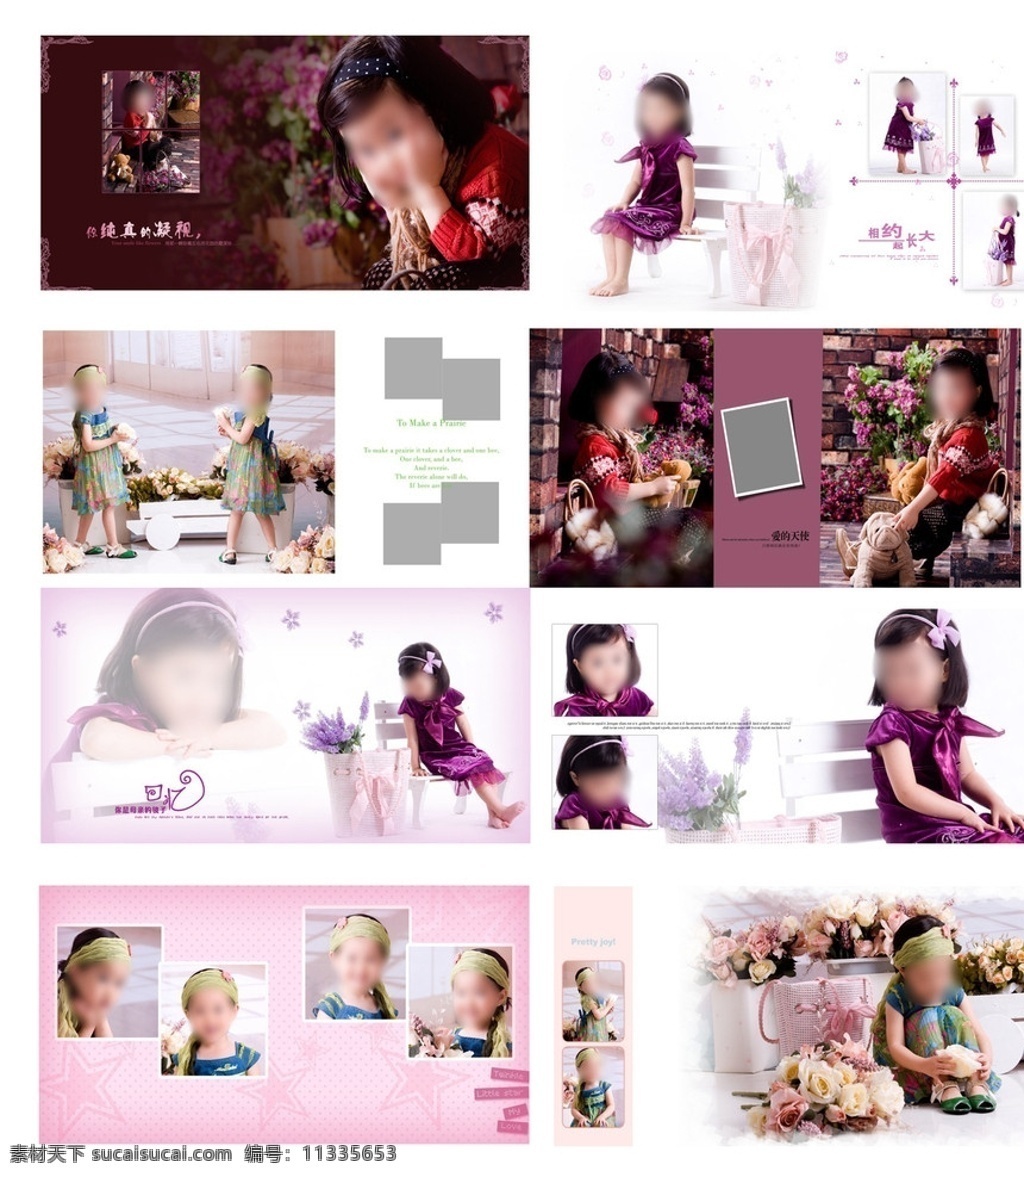 儿童摄影模板 美丽女孩 儿童摄影 模板 文字素材 可爱元素 紫色的薰衣草 漂亮的小公主 玫瑰花园 摄影模板 源文件